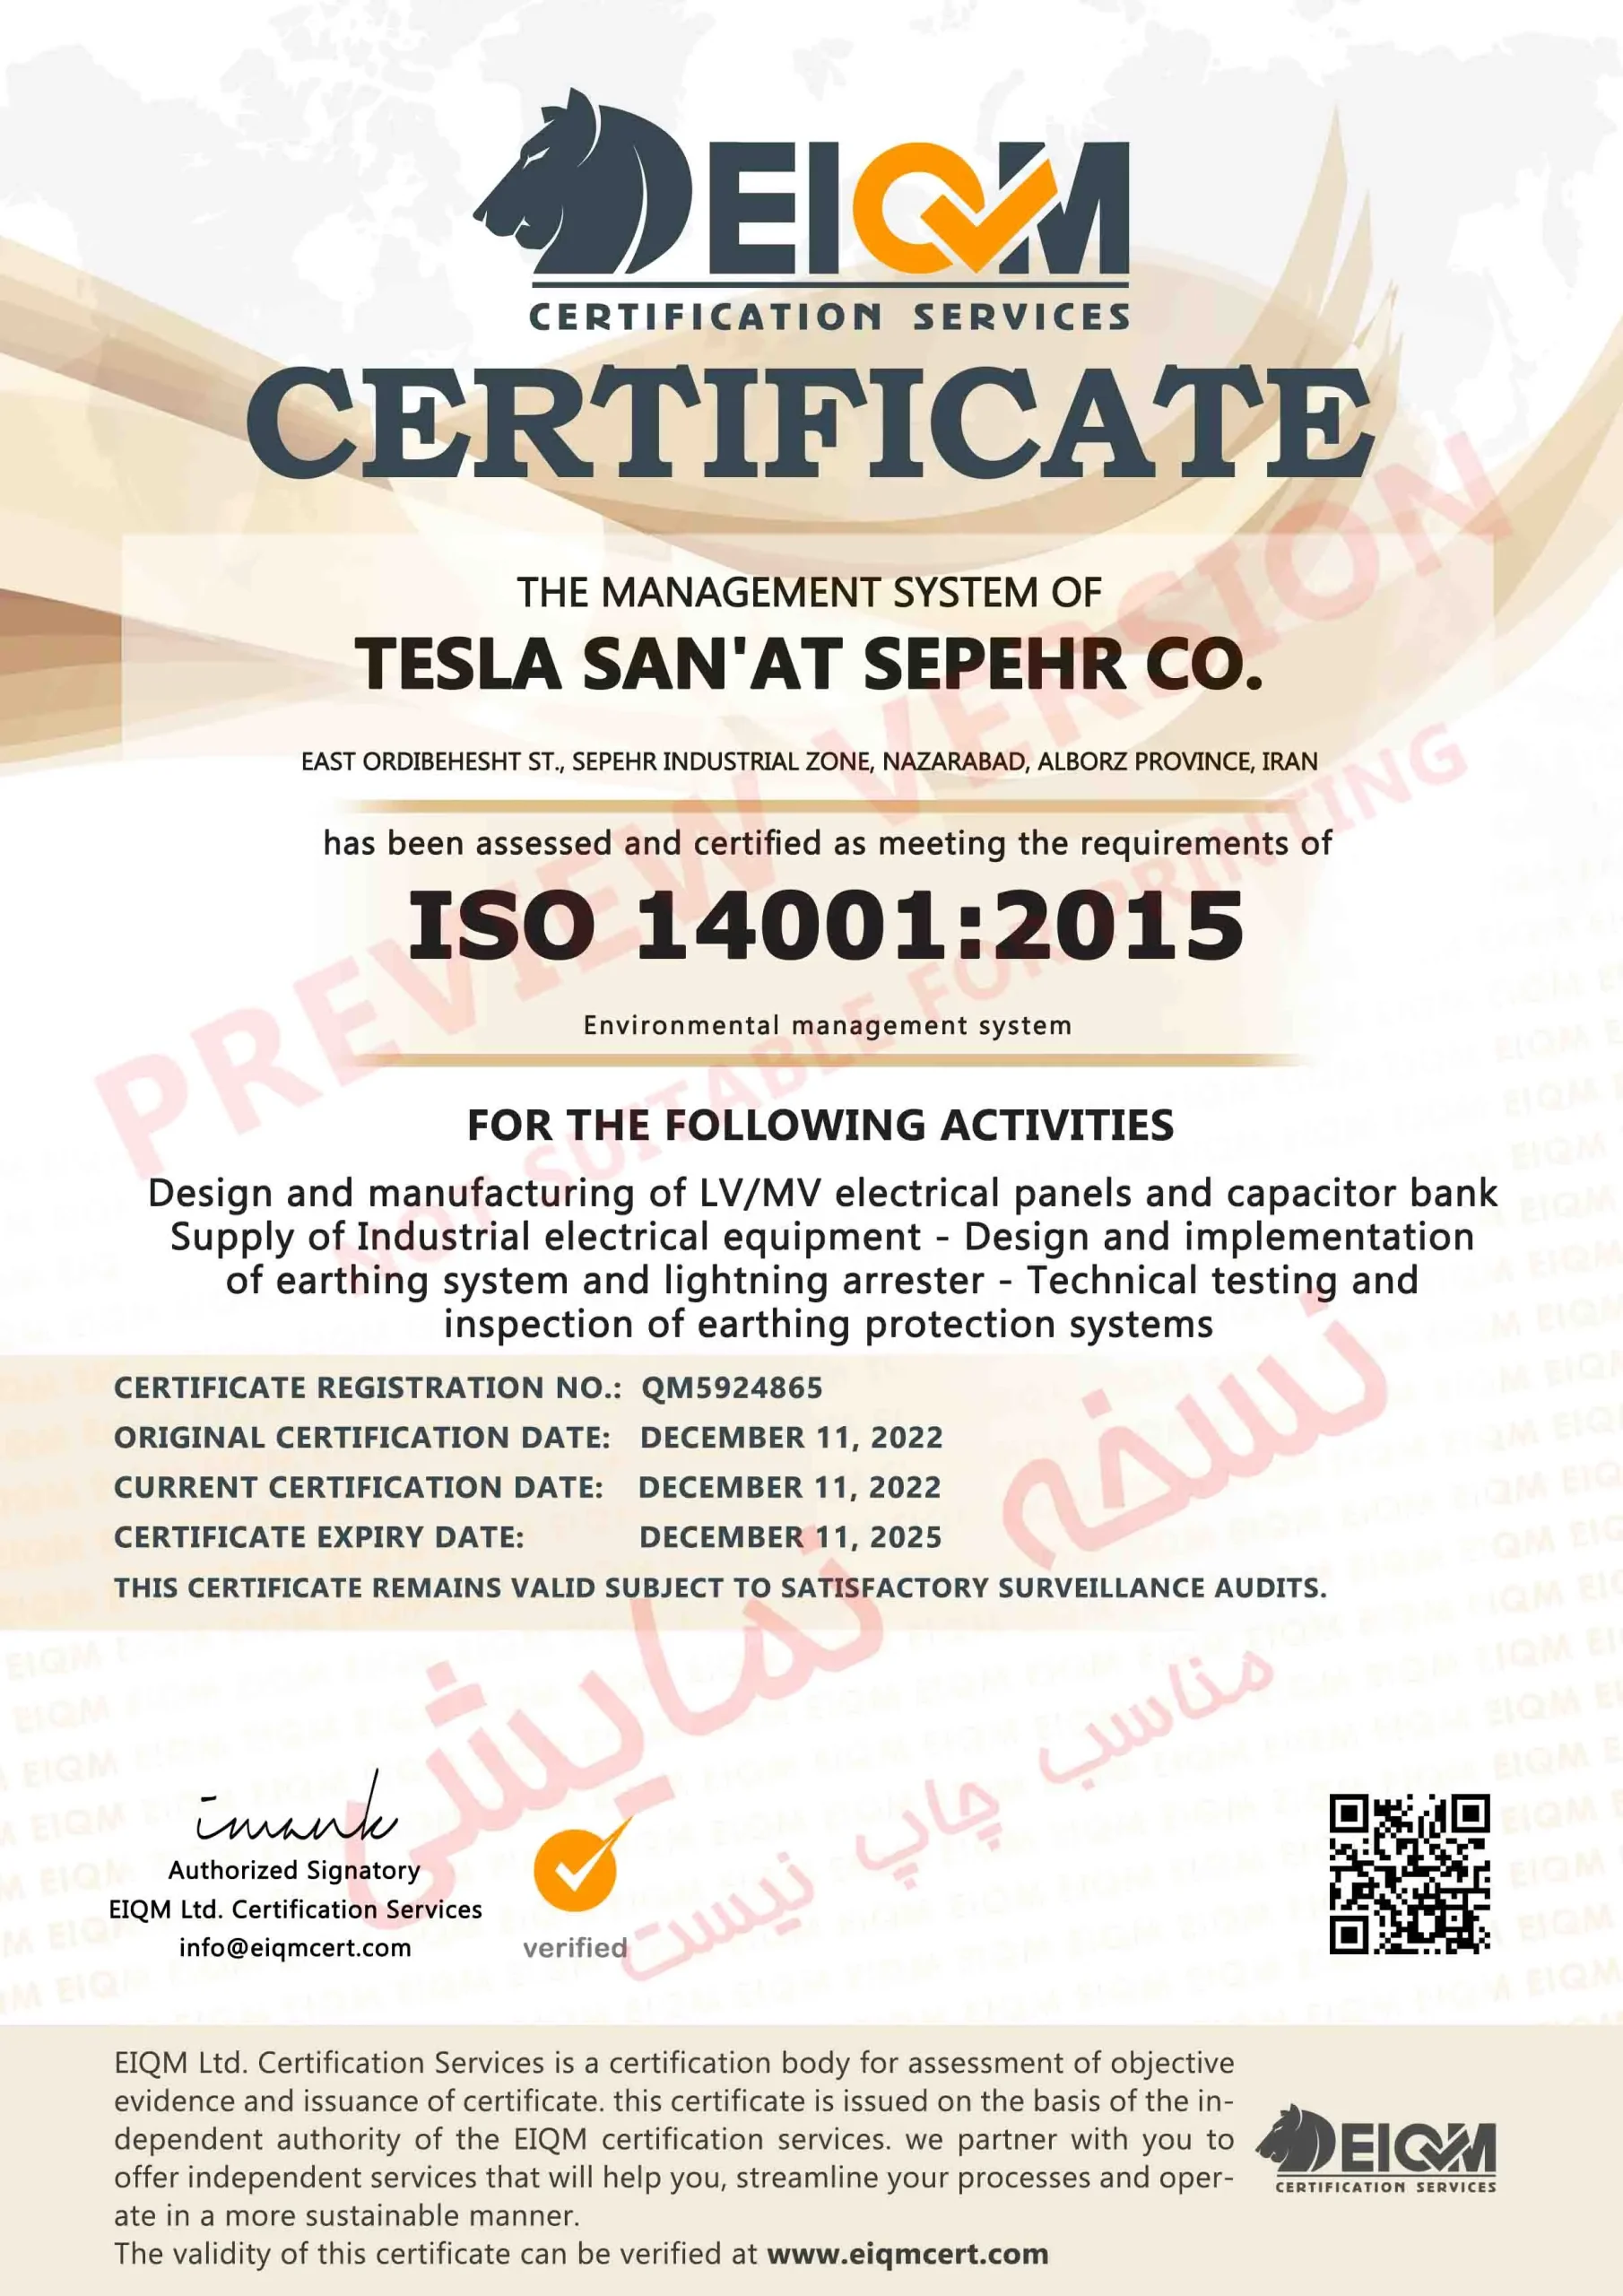 LQ-Tesla San'at Sepehr Co-ISO14001-QM5924865